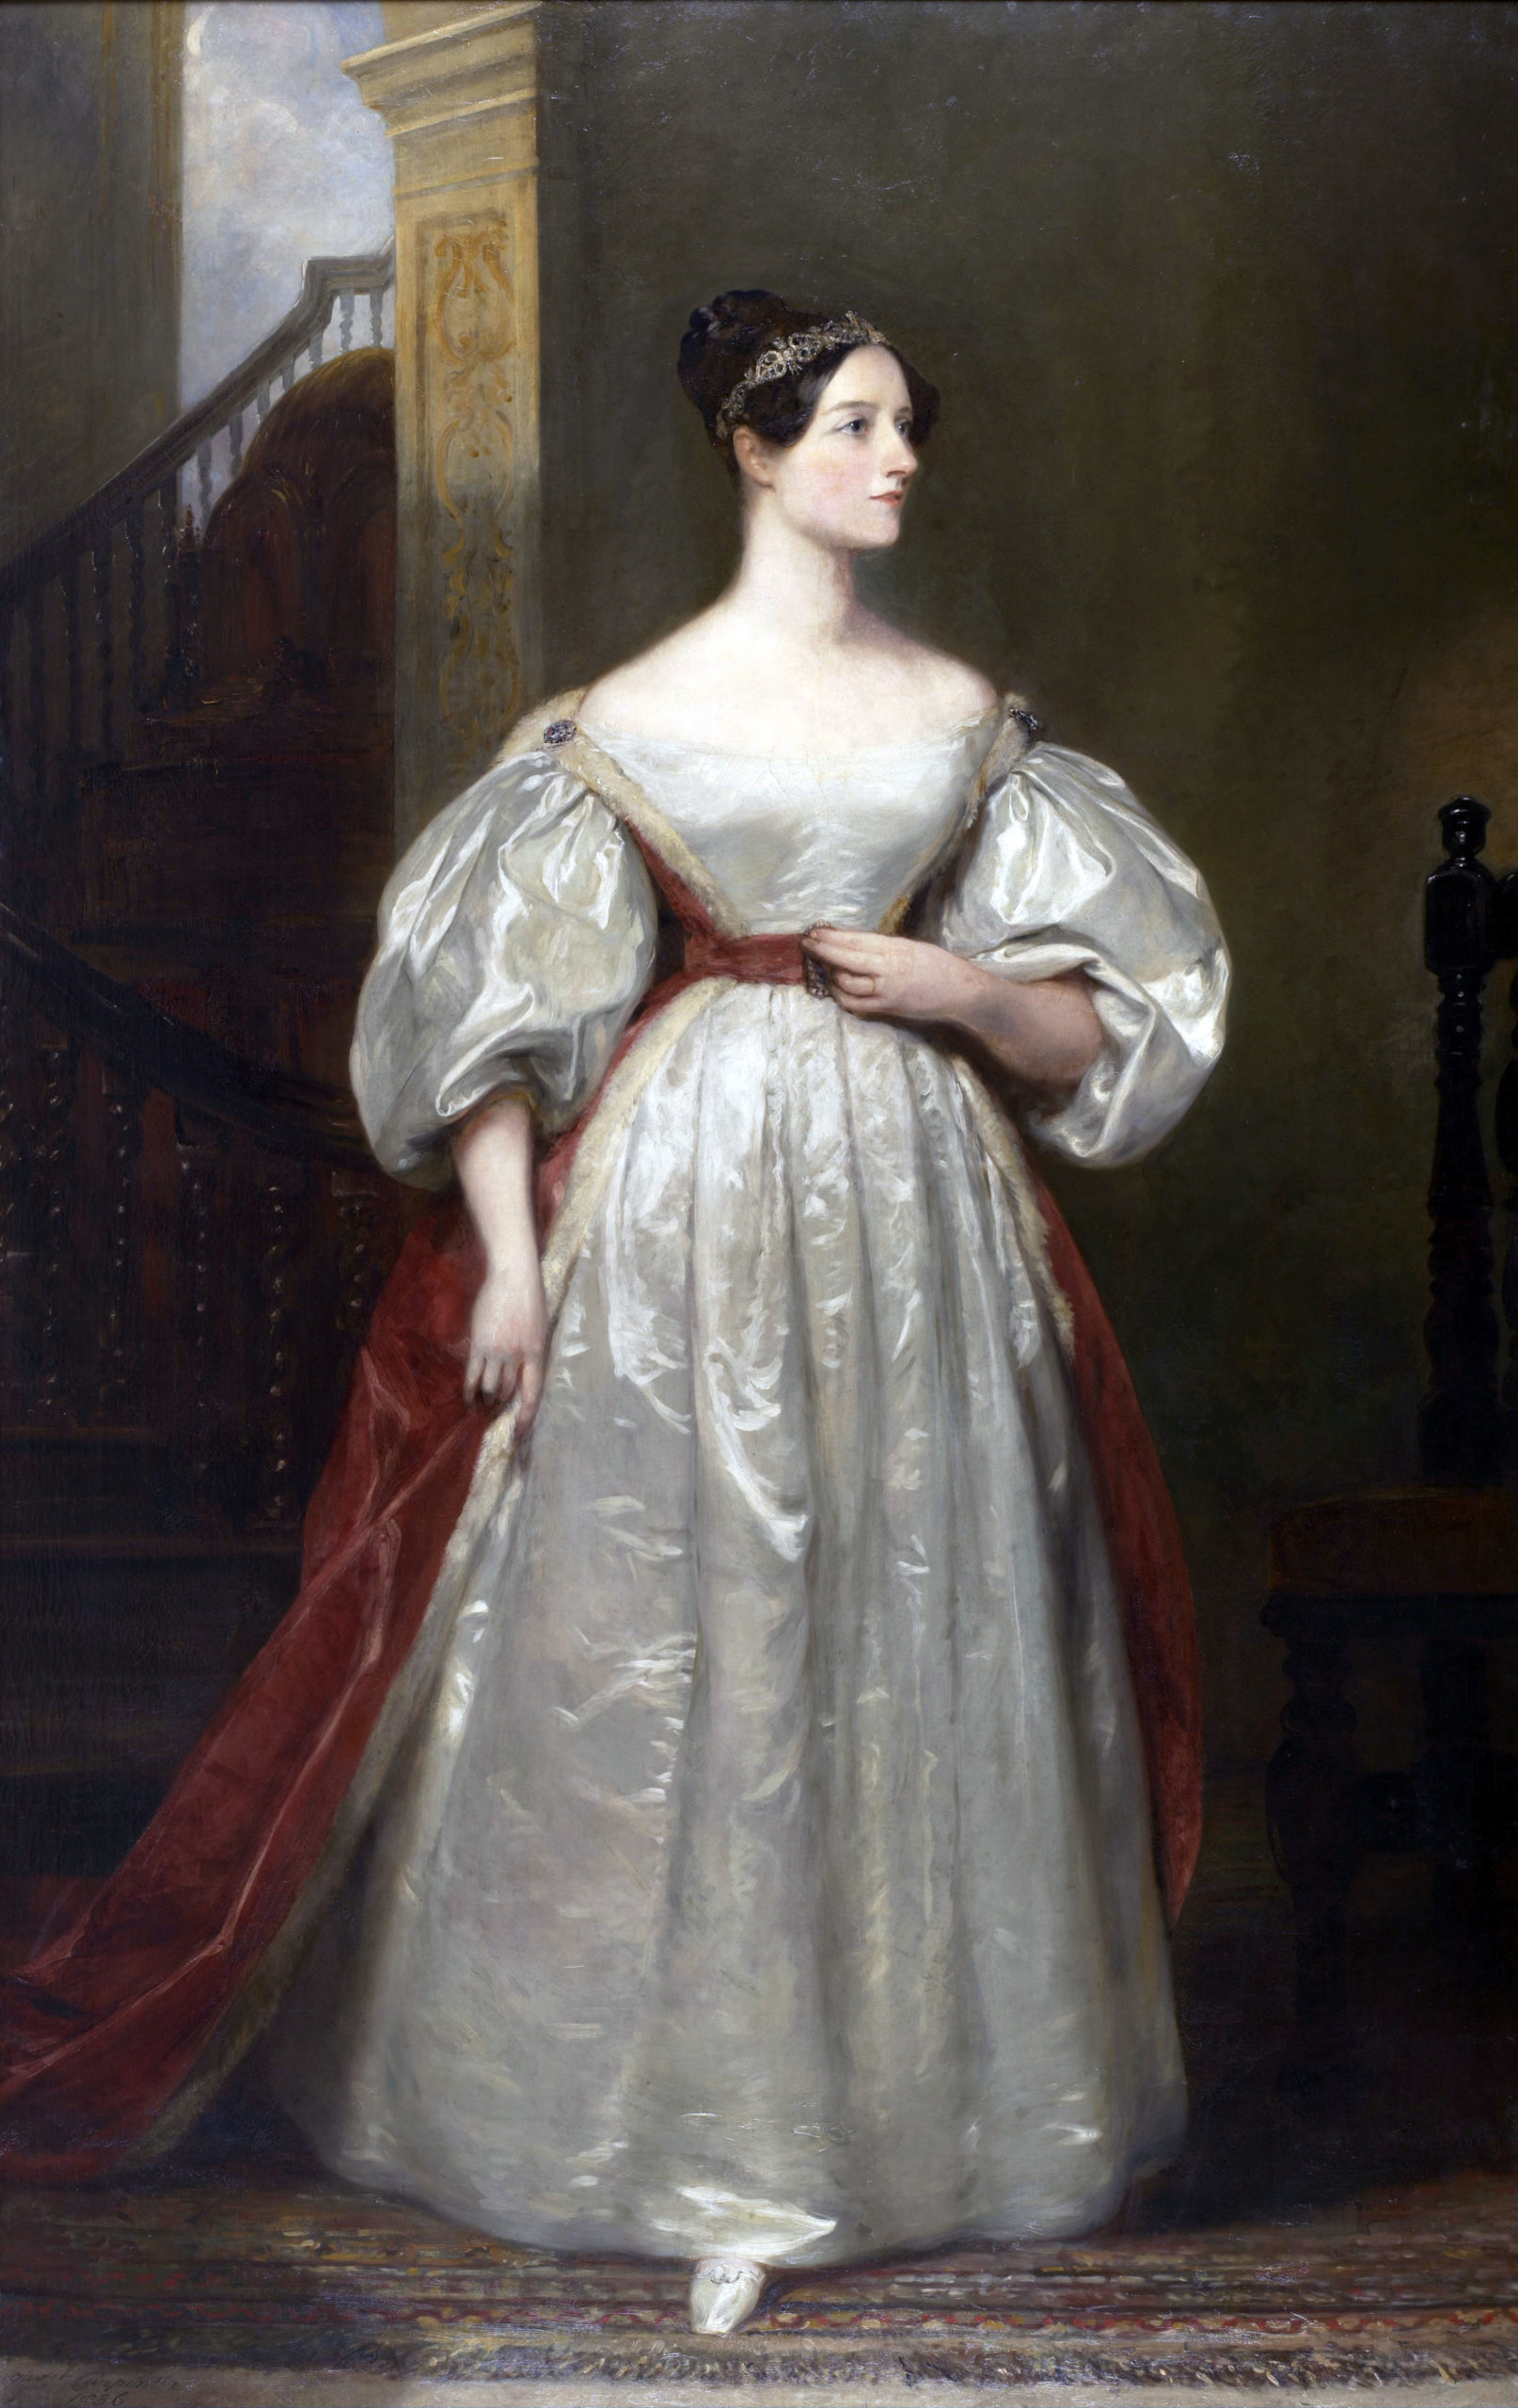 Ölgemälde, das Ada Lovelace in einem eleganten Kleid und mit elegantem Diadem zeigt.